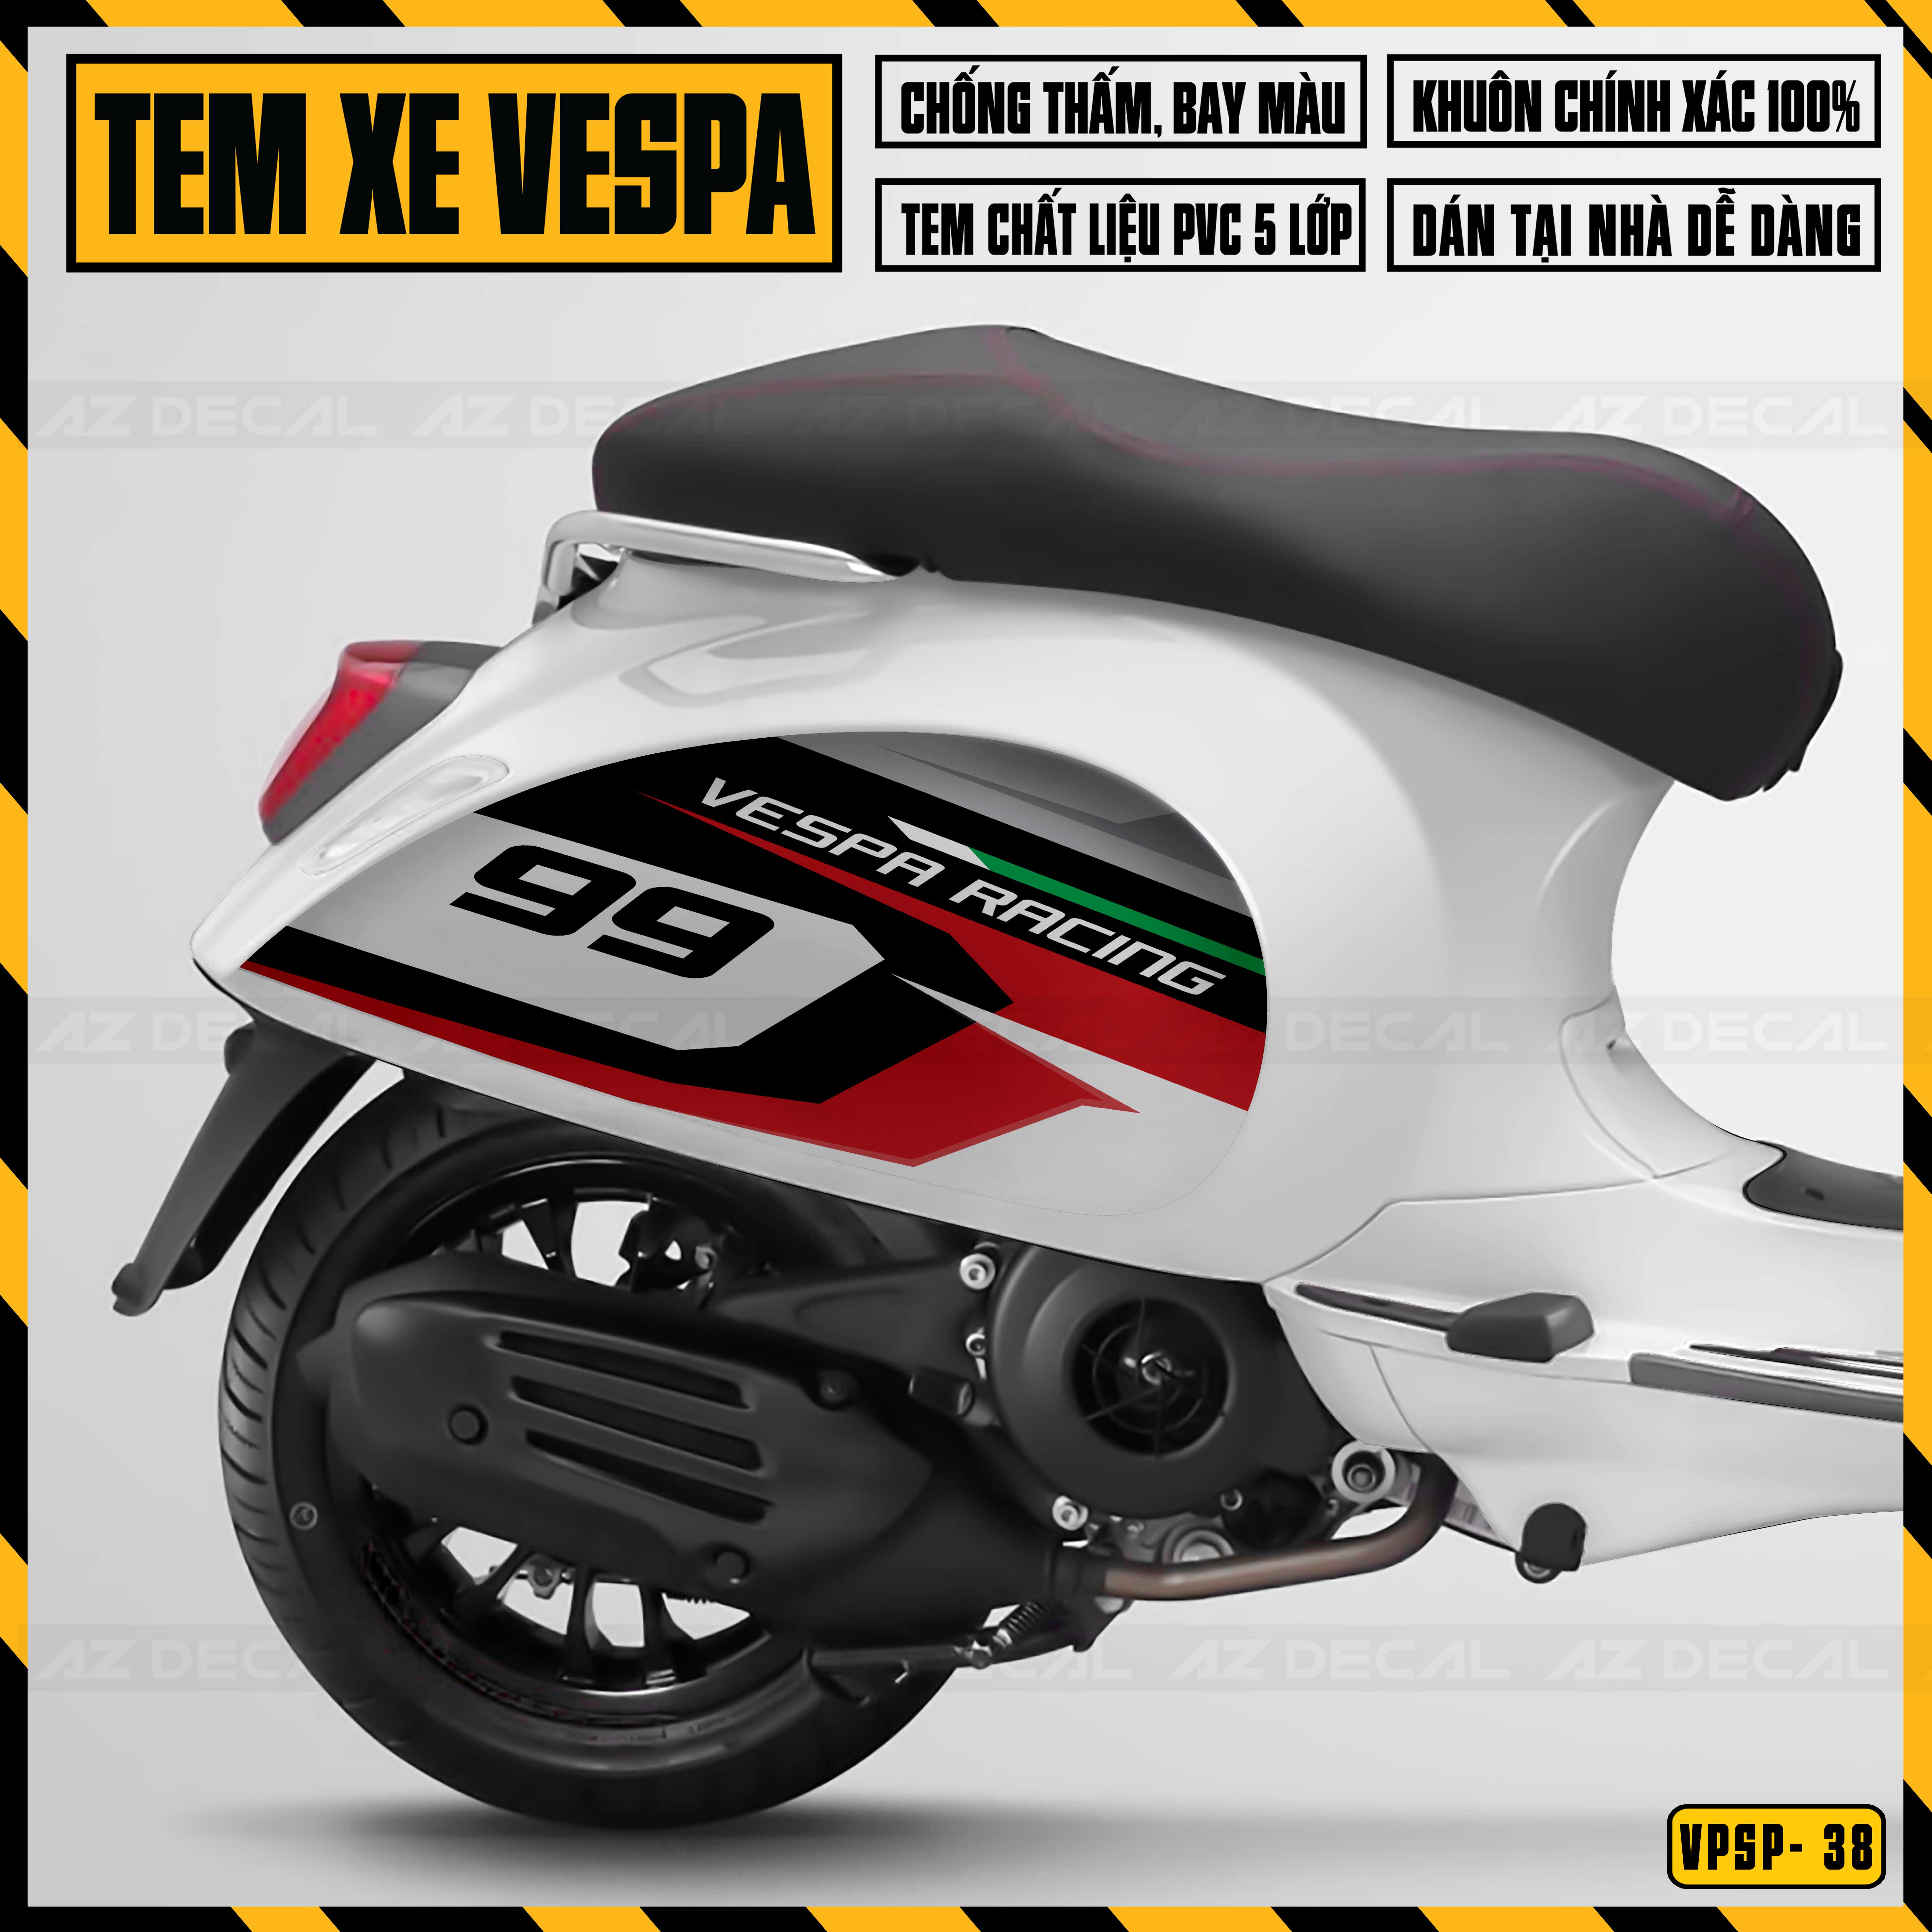 Decal Chế Dán Xe Vespa Sprint / Primavera Mẫu Vespa Racing 99 | VP38 | Tem Rời Chống Nước, Cắt Sẵn Dễ Dán